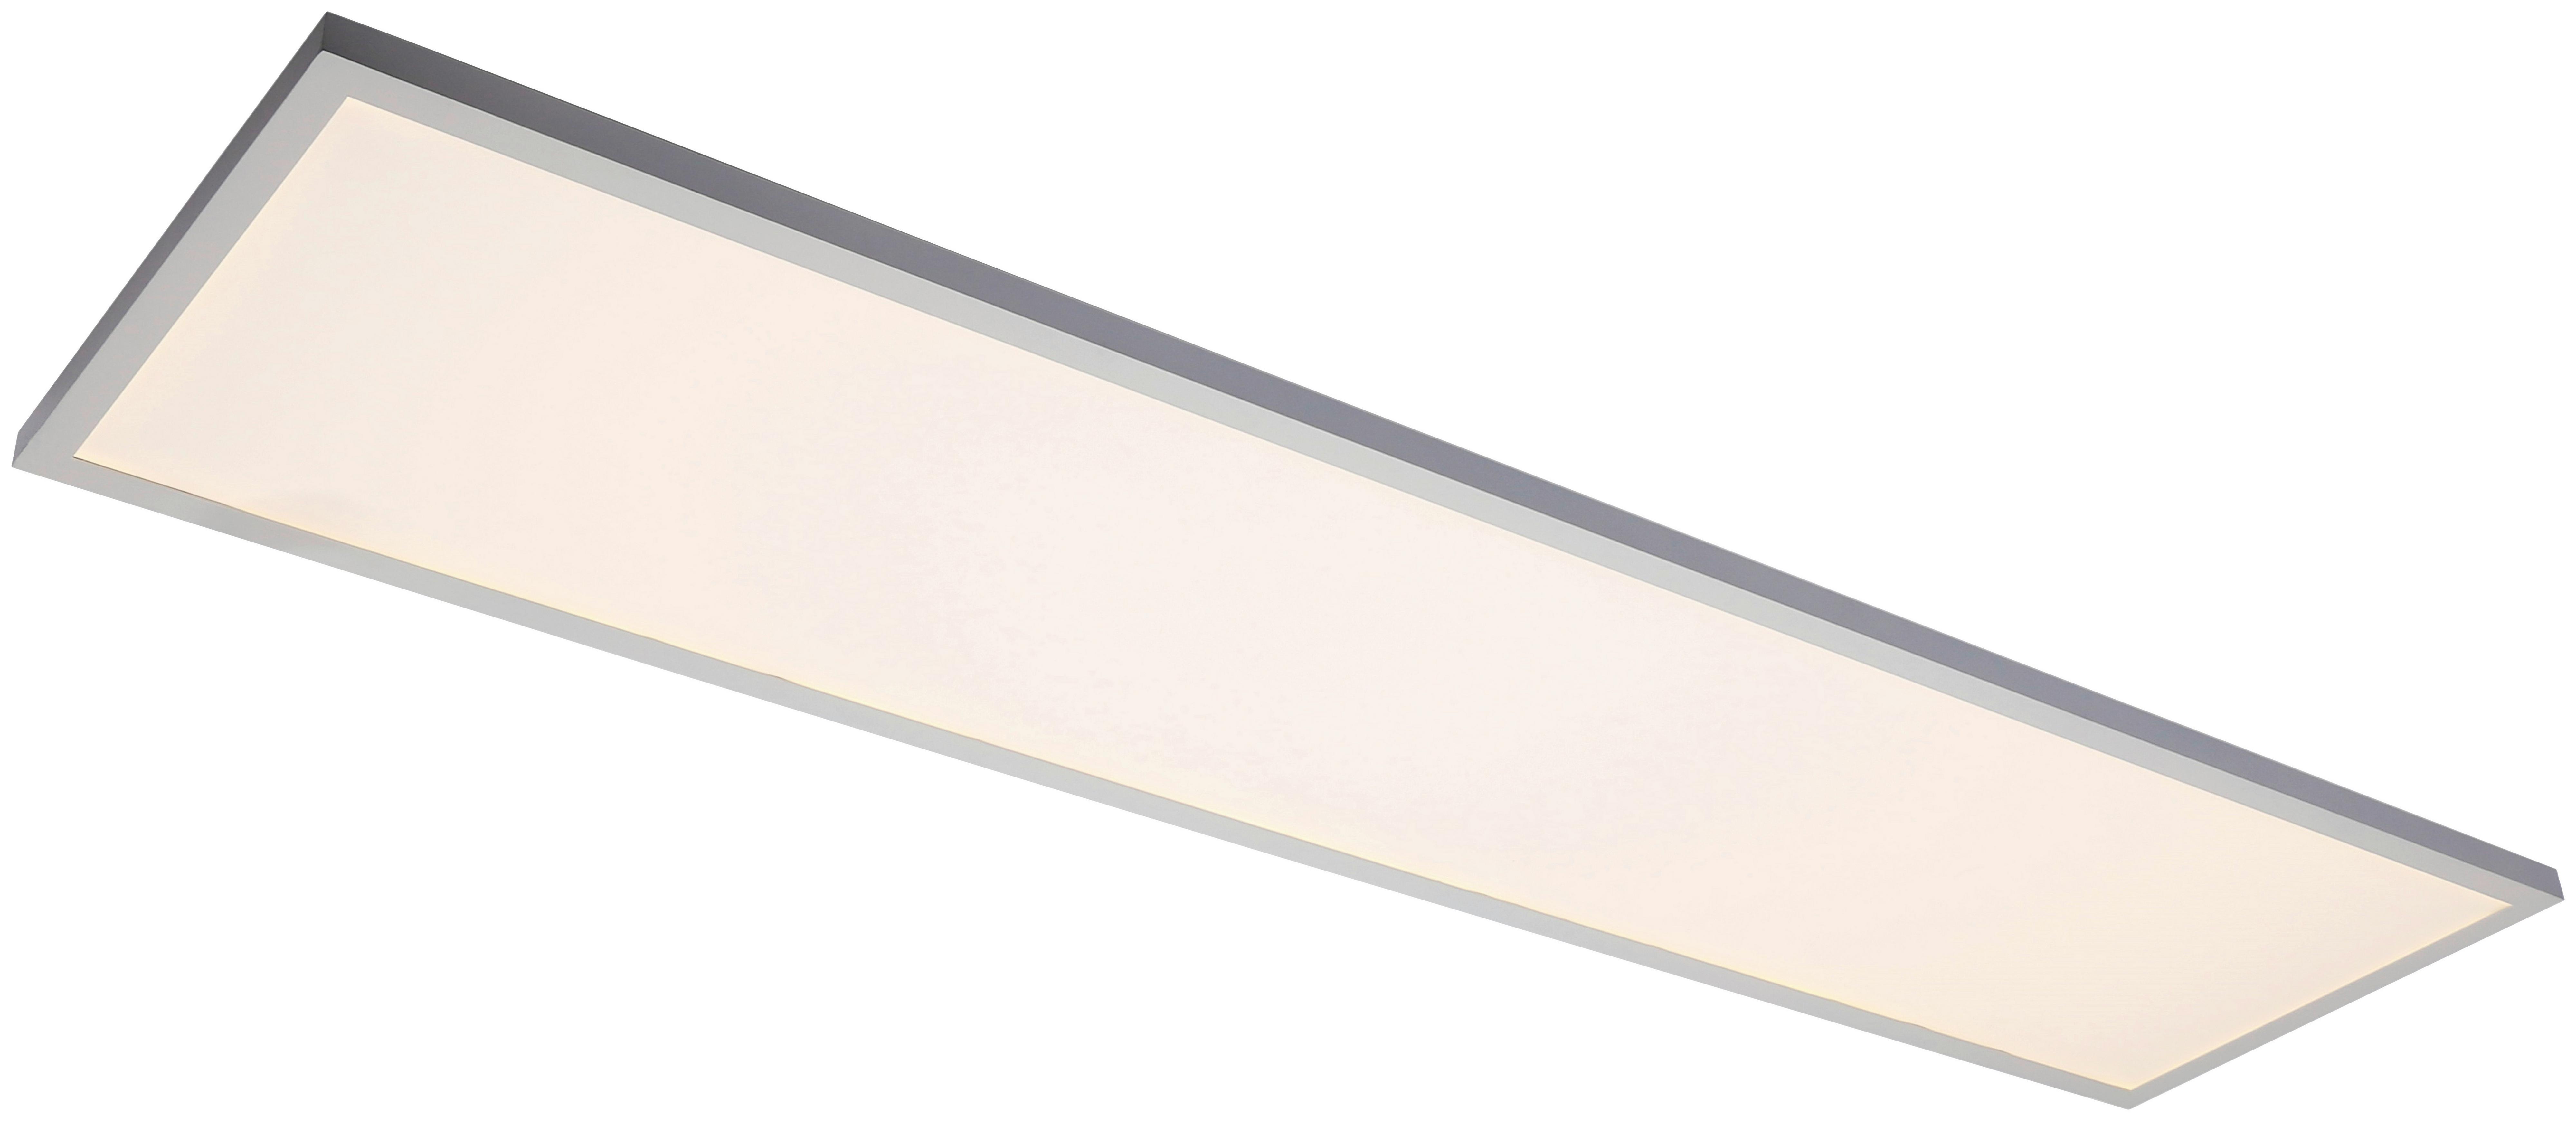 LED-Deckenleuchte Cornelius max. 40 Watt - Weiss, Modern, Kunststoff (120/30/7,5cm) - Premium Living